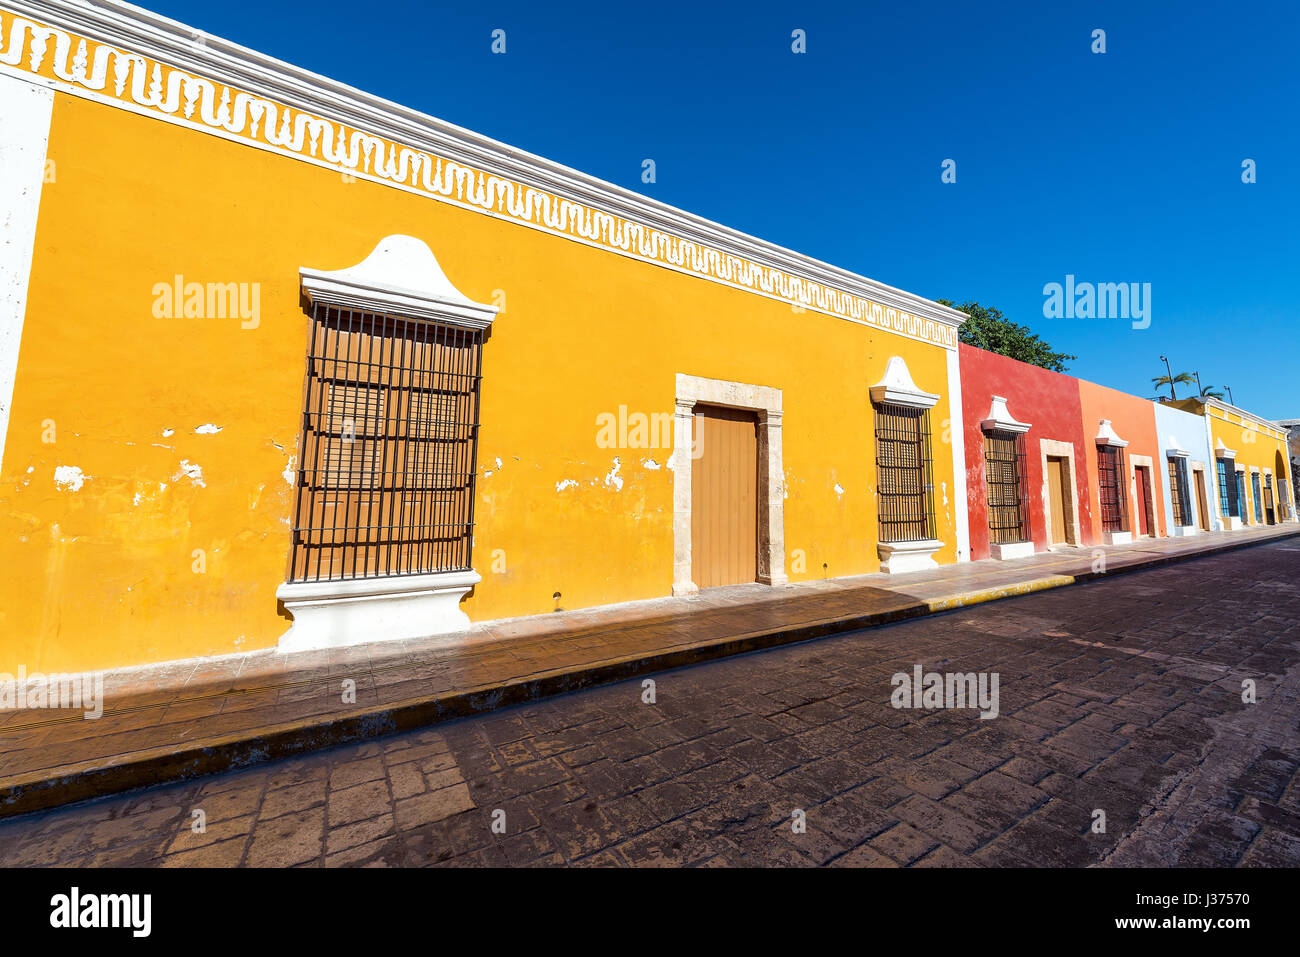 Rangée de bâtiments coloniaux colorés dans l'UNESCO World Heritage Centre ville de Campeche, Mexique Banque D'Images